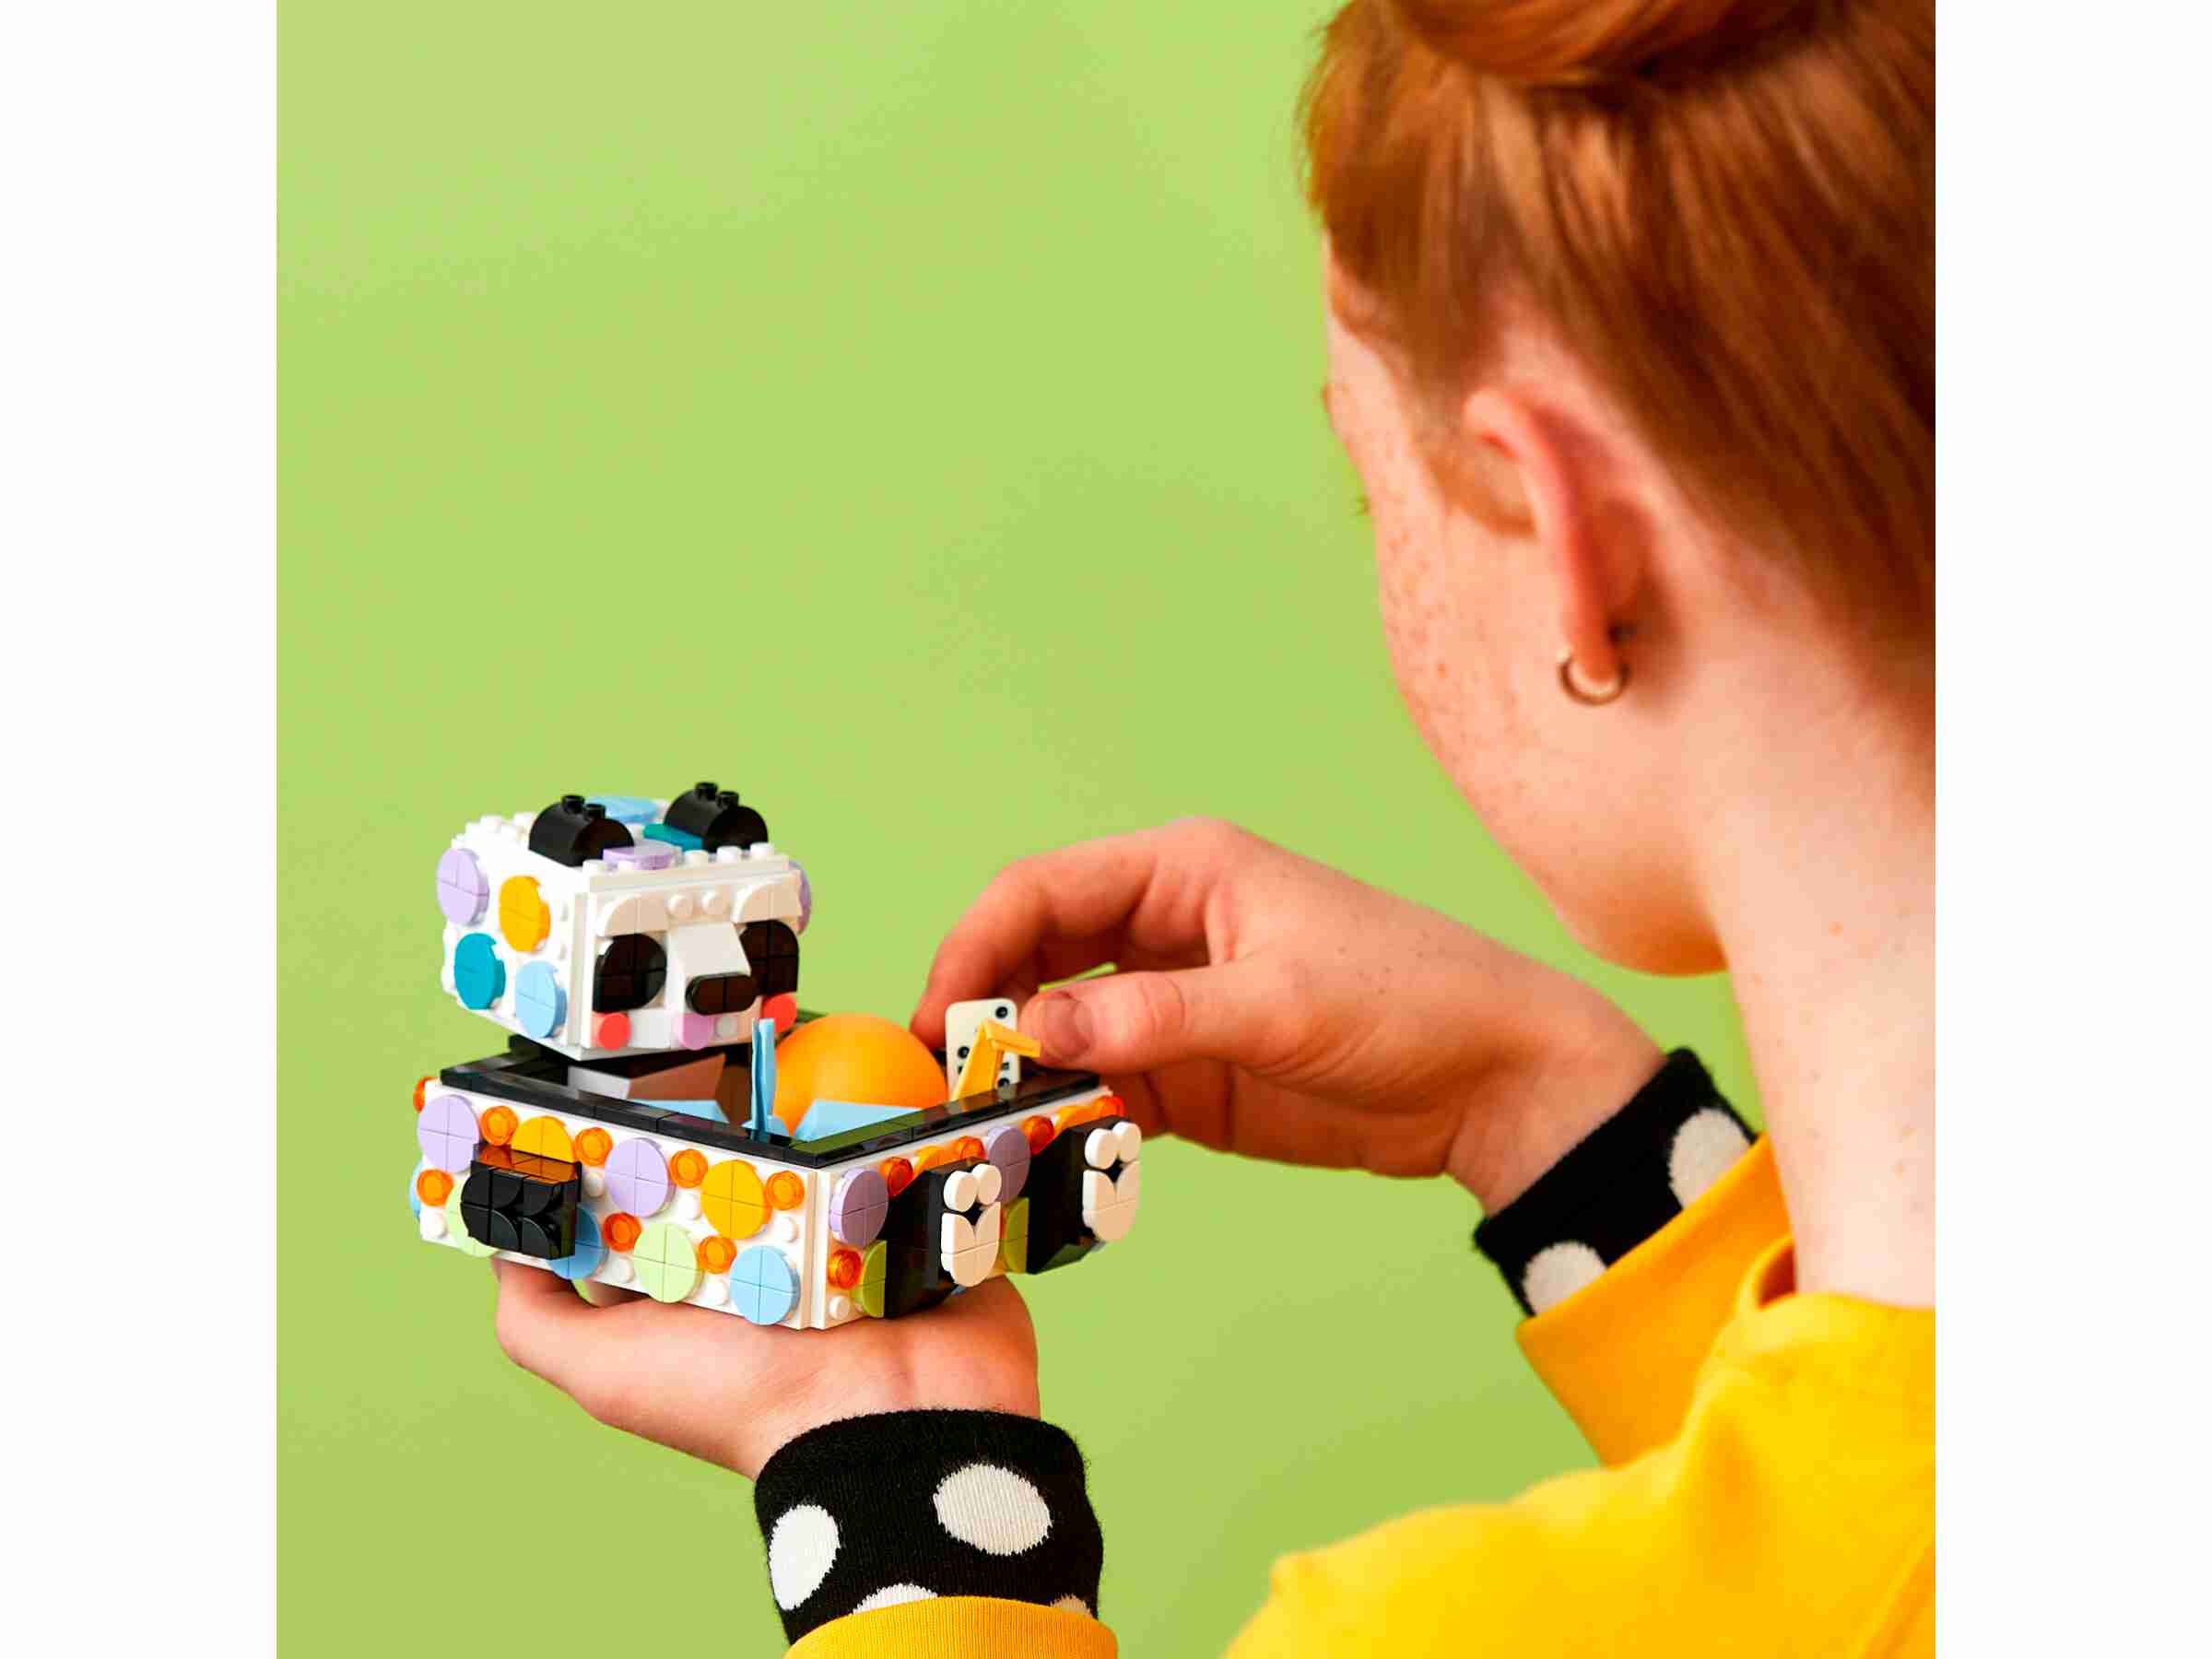 LEGO 41959 DOTS Panda Ablageschale, Schmuckkästchen